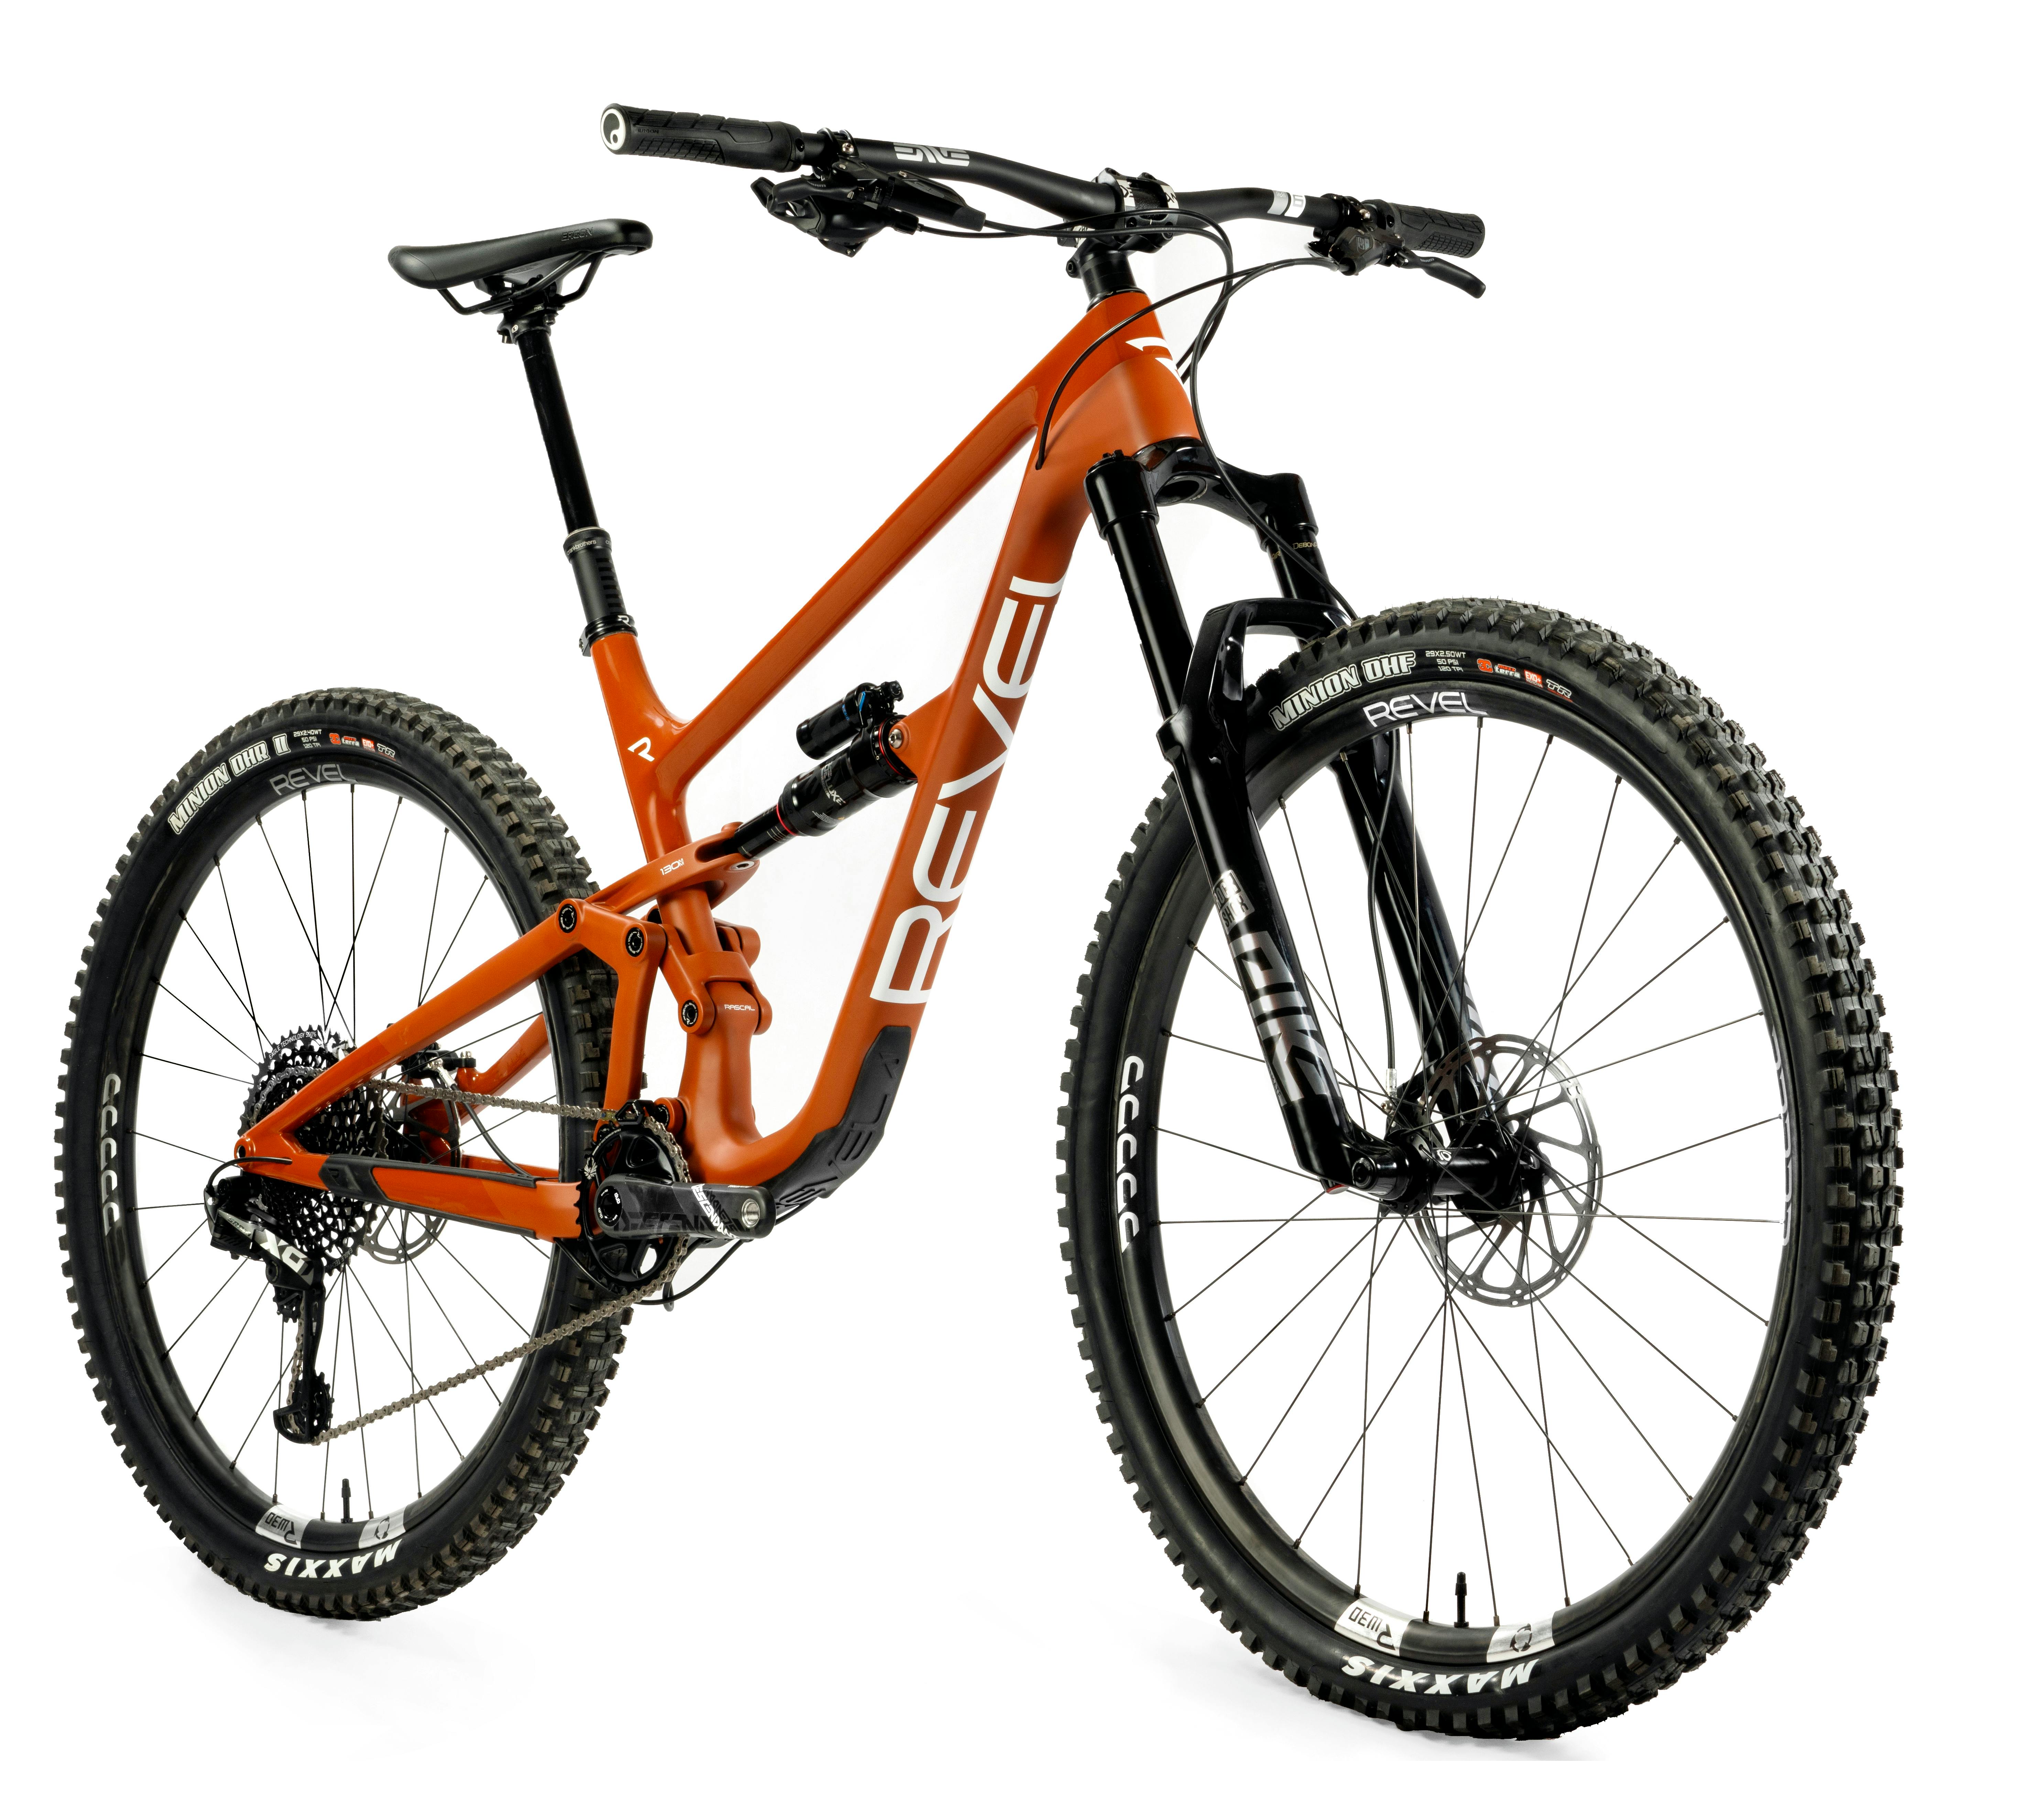 Orange Revel Rascal 29er mountain bike against a white background.